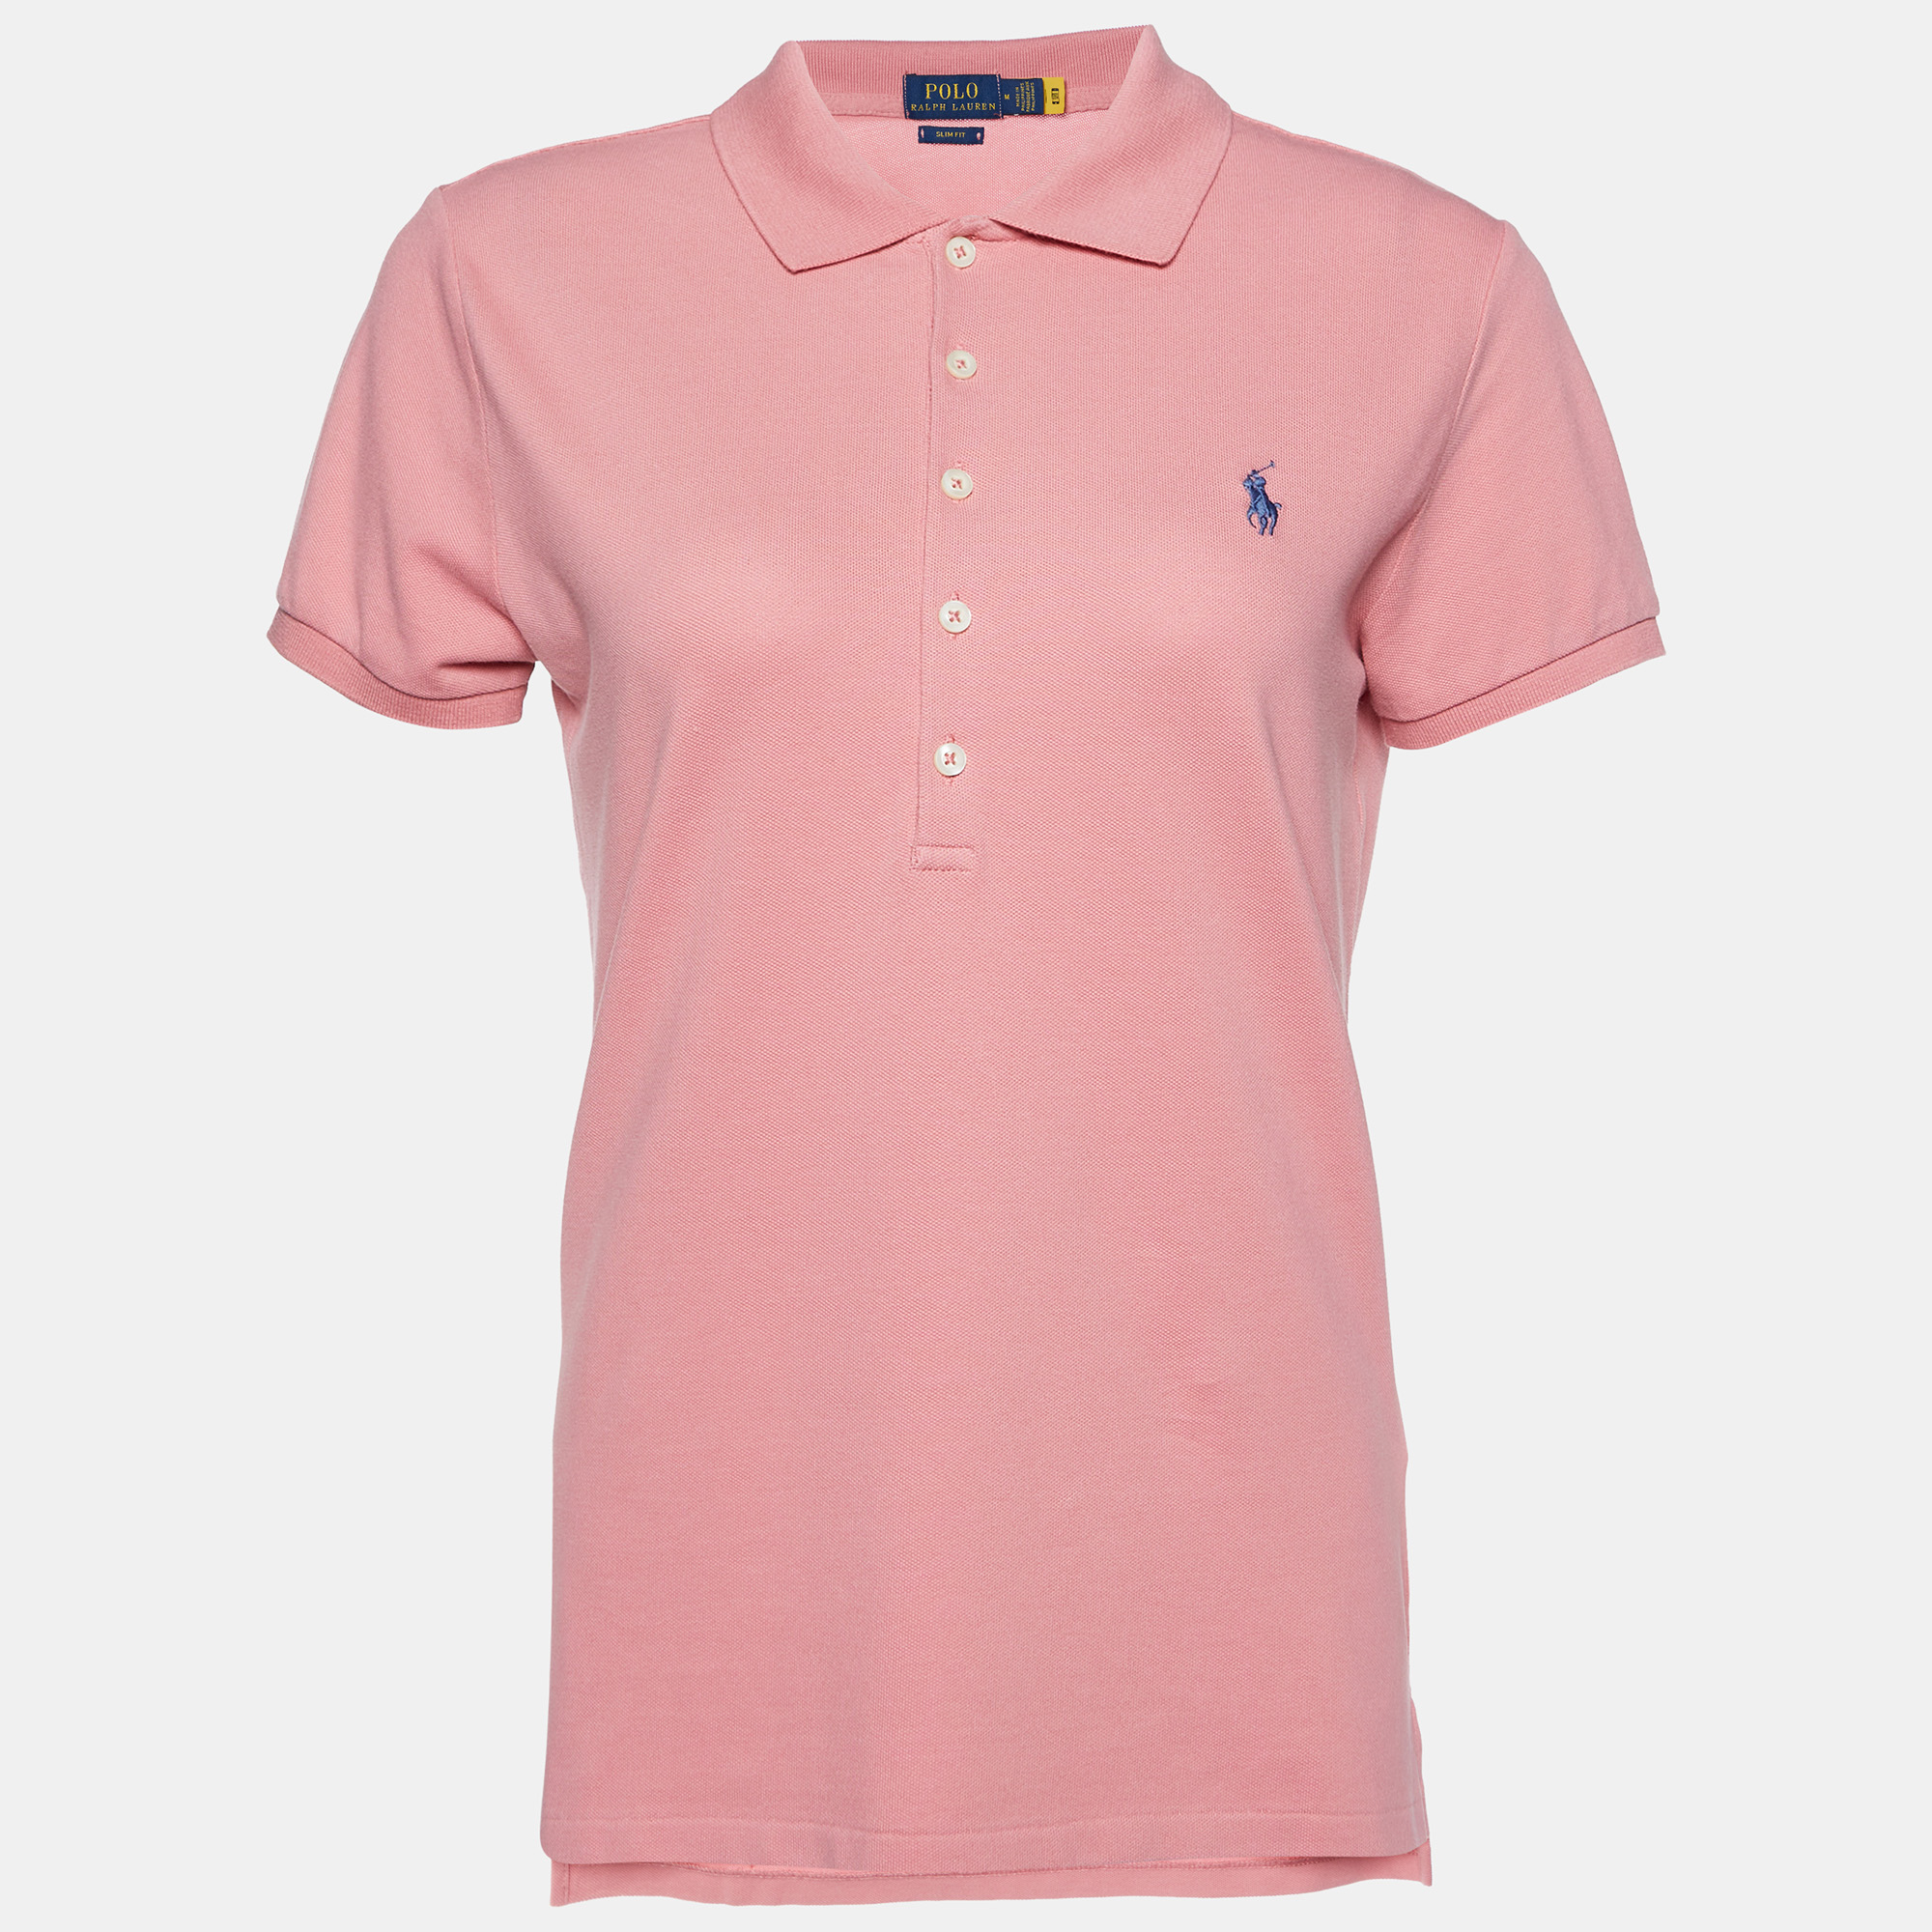 

Polo Ralph Lauren Pink Cotton Pique Slim Fit Polo T-Shirt M